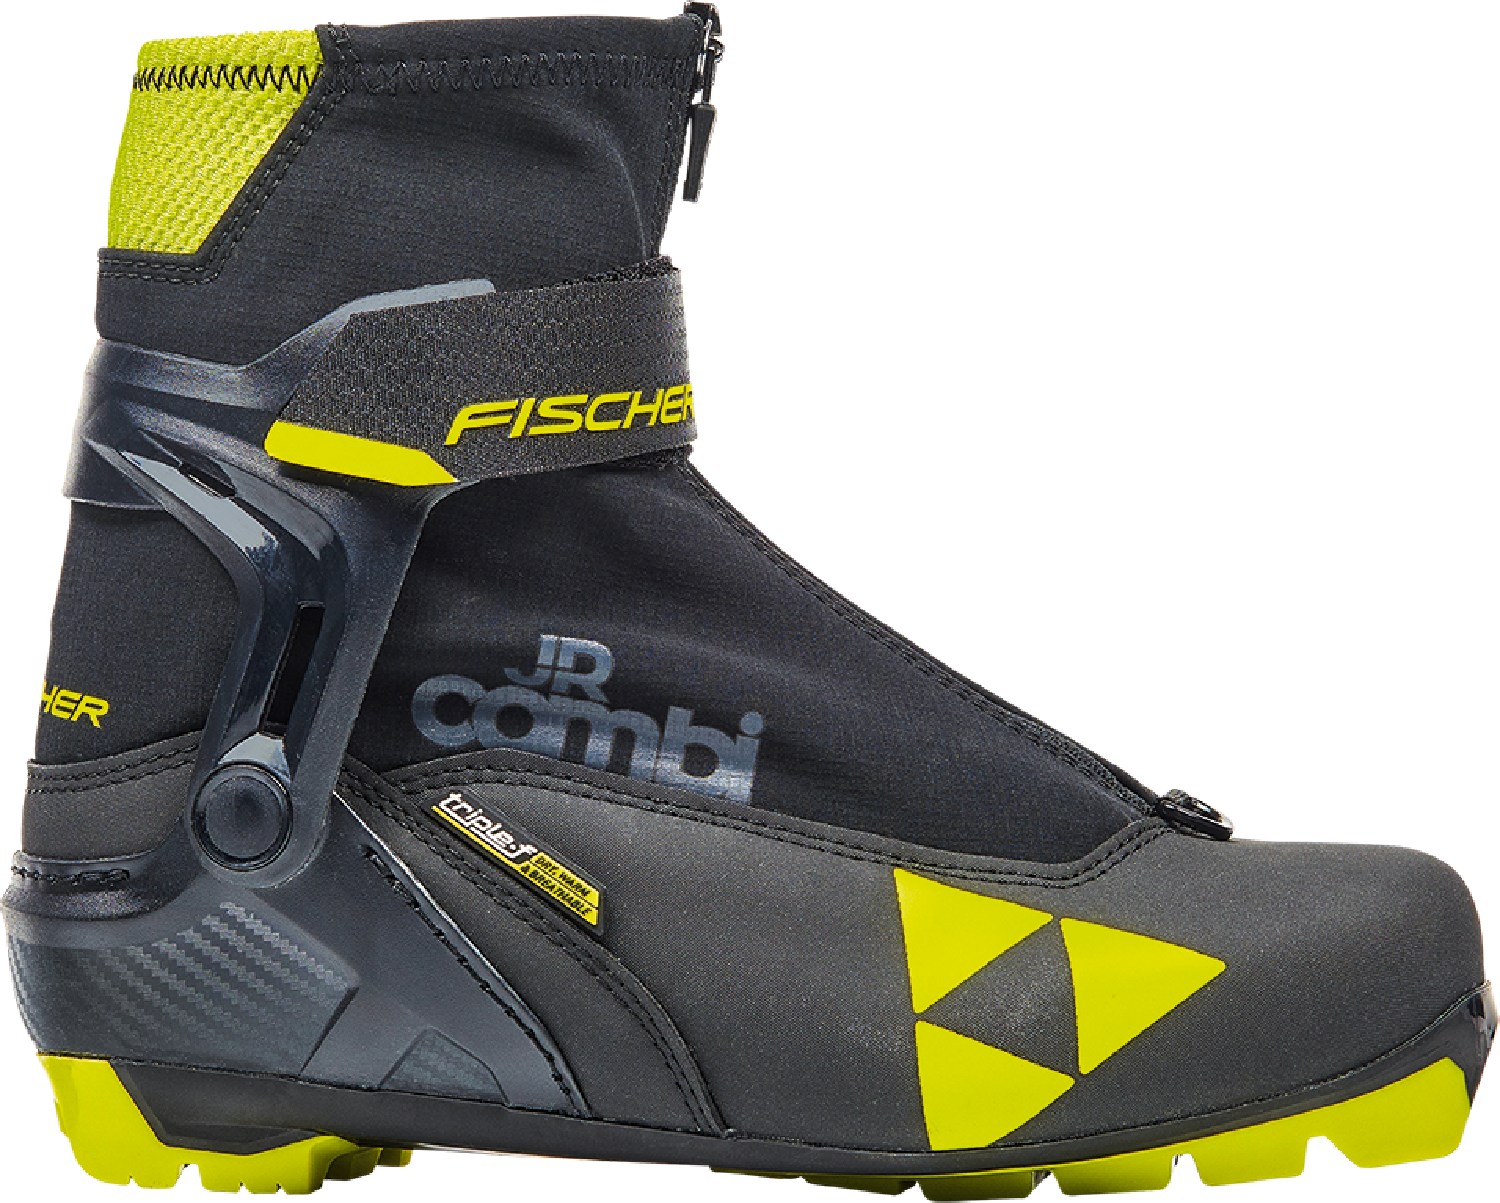 Ботинки для беговых лыж JR Combi — детские Fischer, черный детские лыжные ботинки fischer combi jr 2020 2021 р 41 черный салатовый